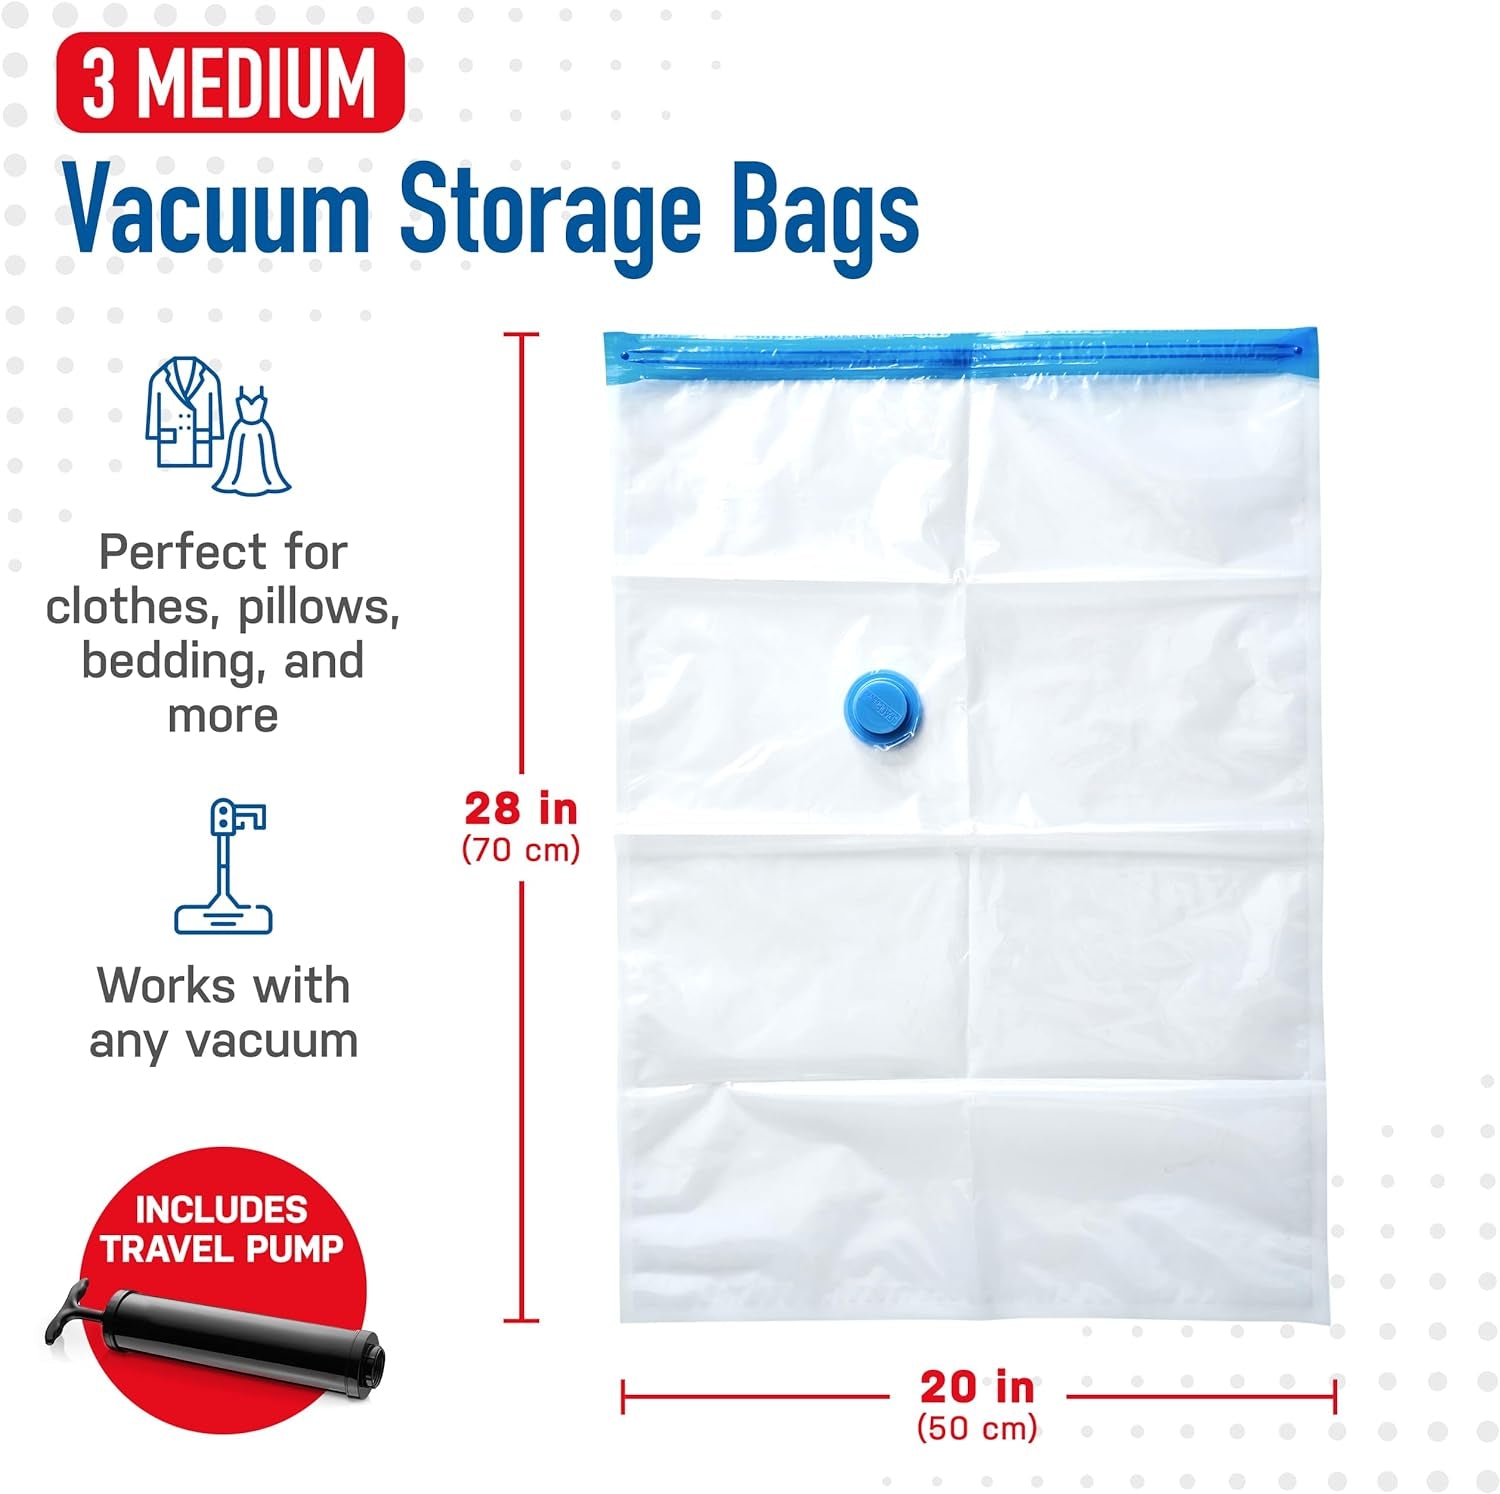 Vacuum Storage Bags - Clothes Storage Bag Vacuum Pack - Space Saver Vacuum Storage Bags for Clothes Storage, Vacuum Bags for Bedding - Vacuum Bags for Clothes - with Pump (MEDIUM 3-Pack)